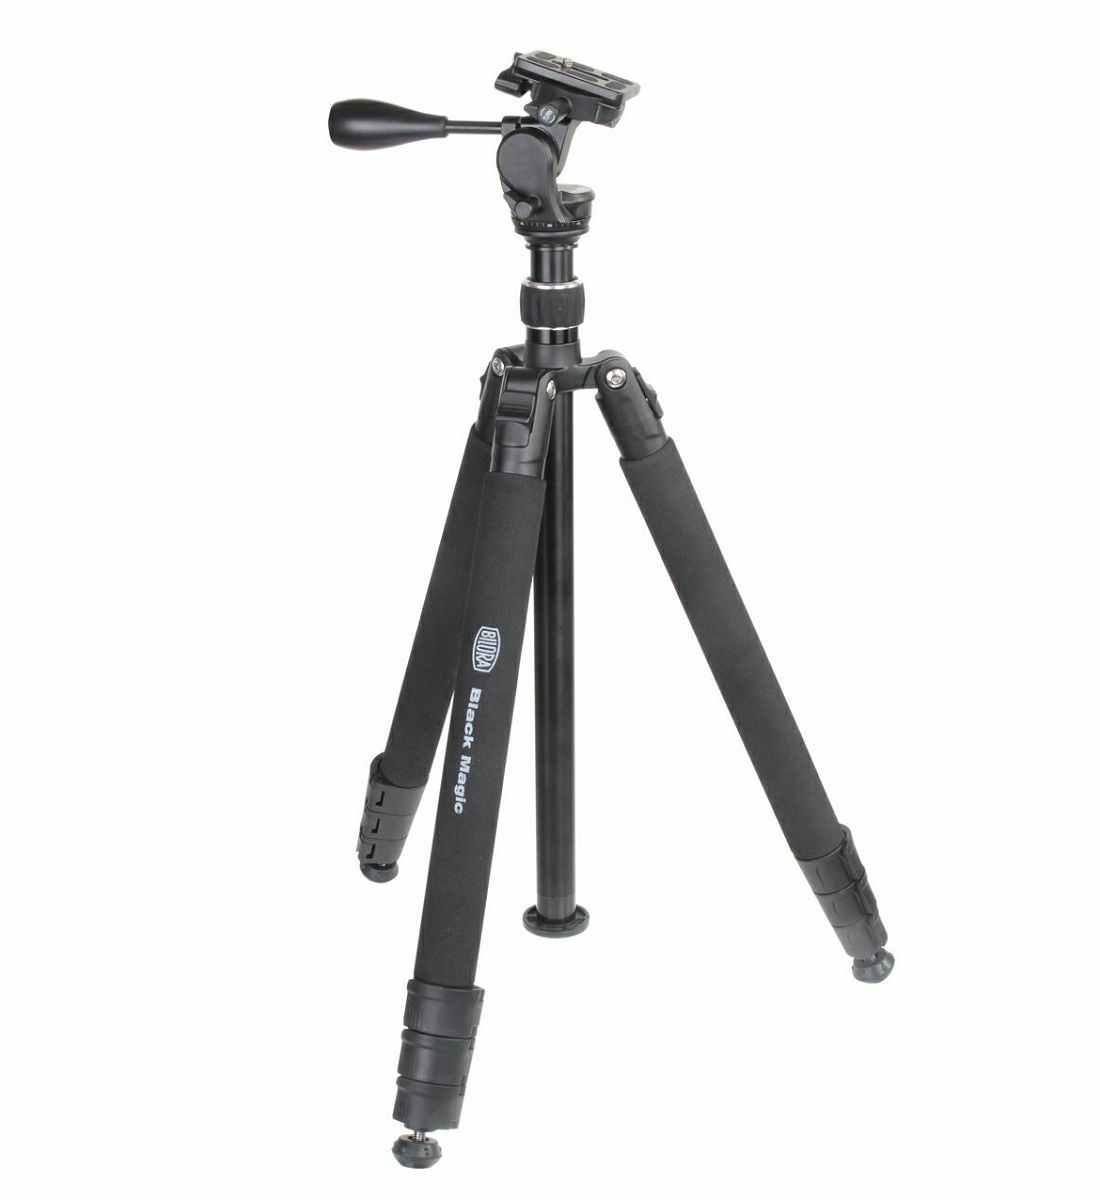 Bilora Black Magic II 178cm 5kg aluminijski stativ za fotoaparat tripod + pan head (1131)